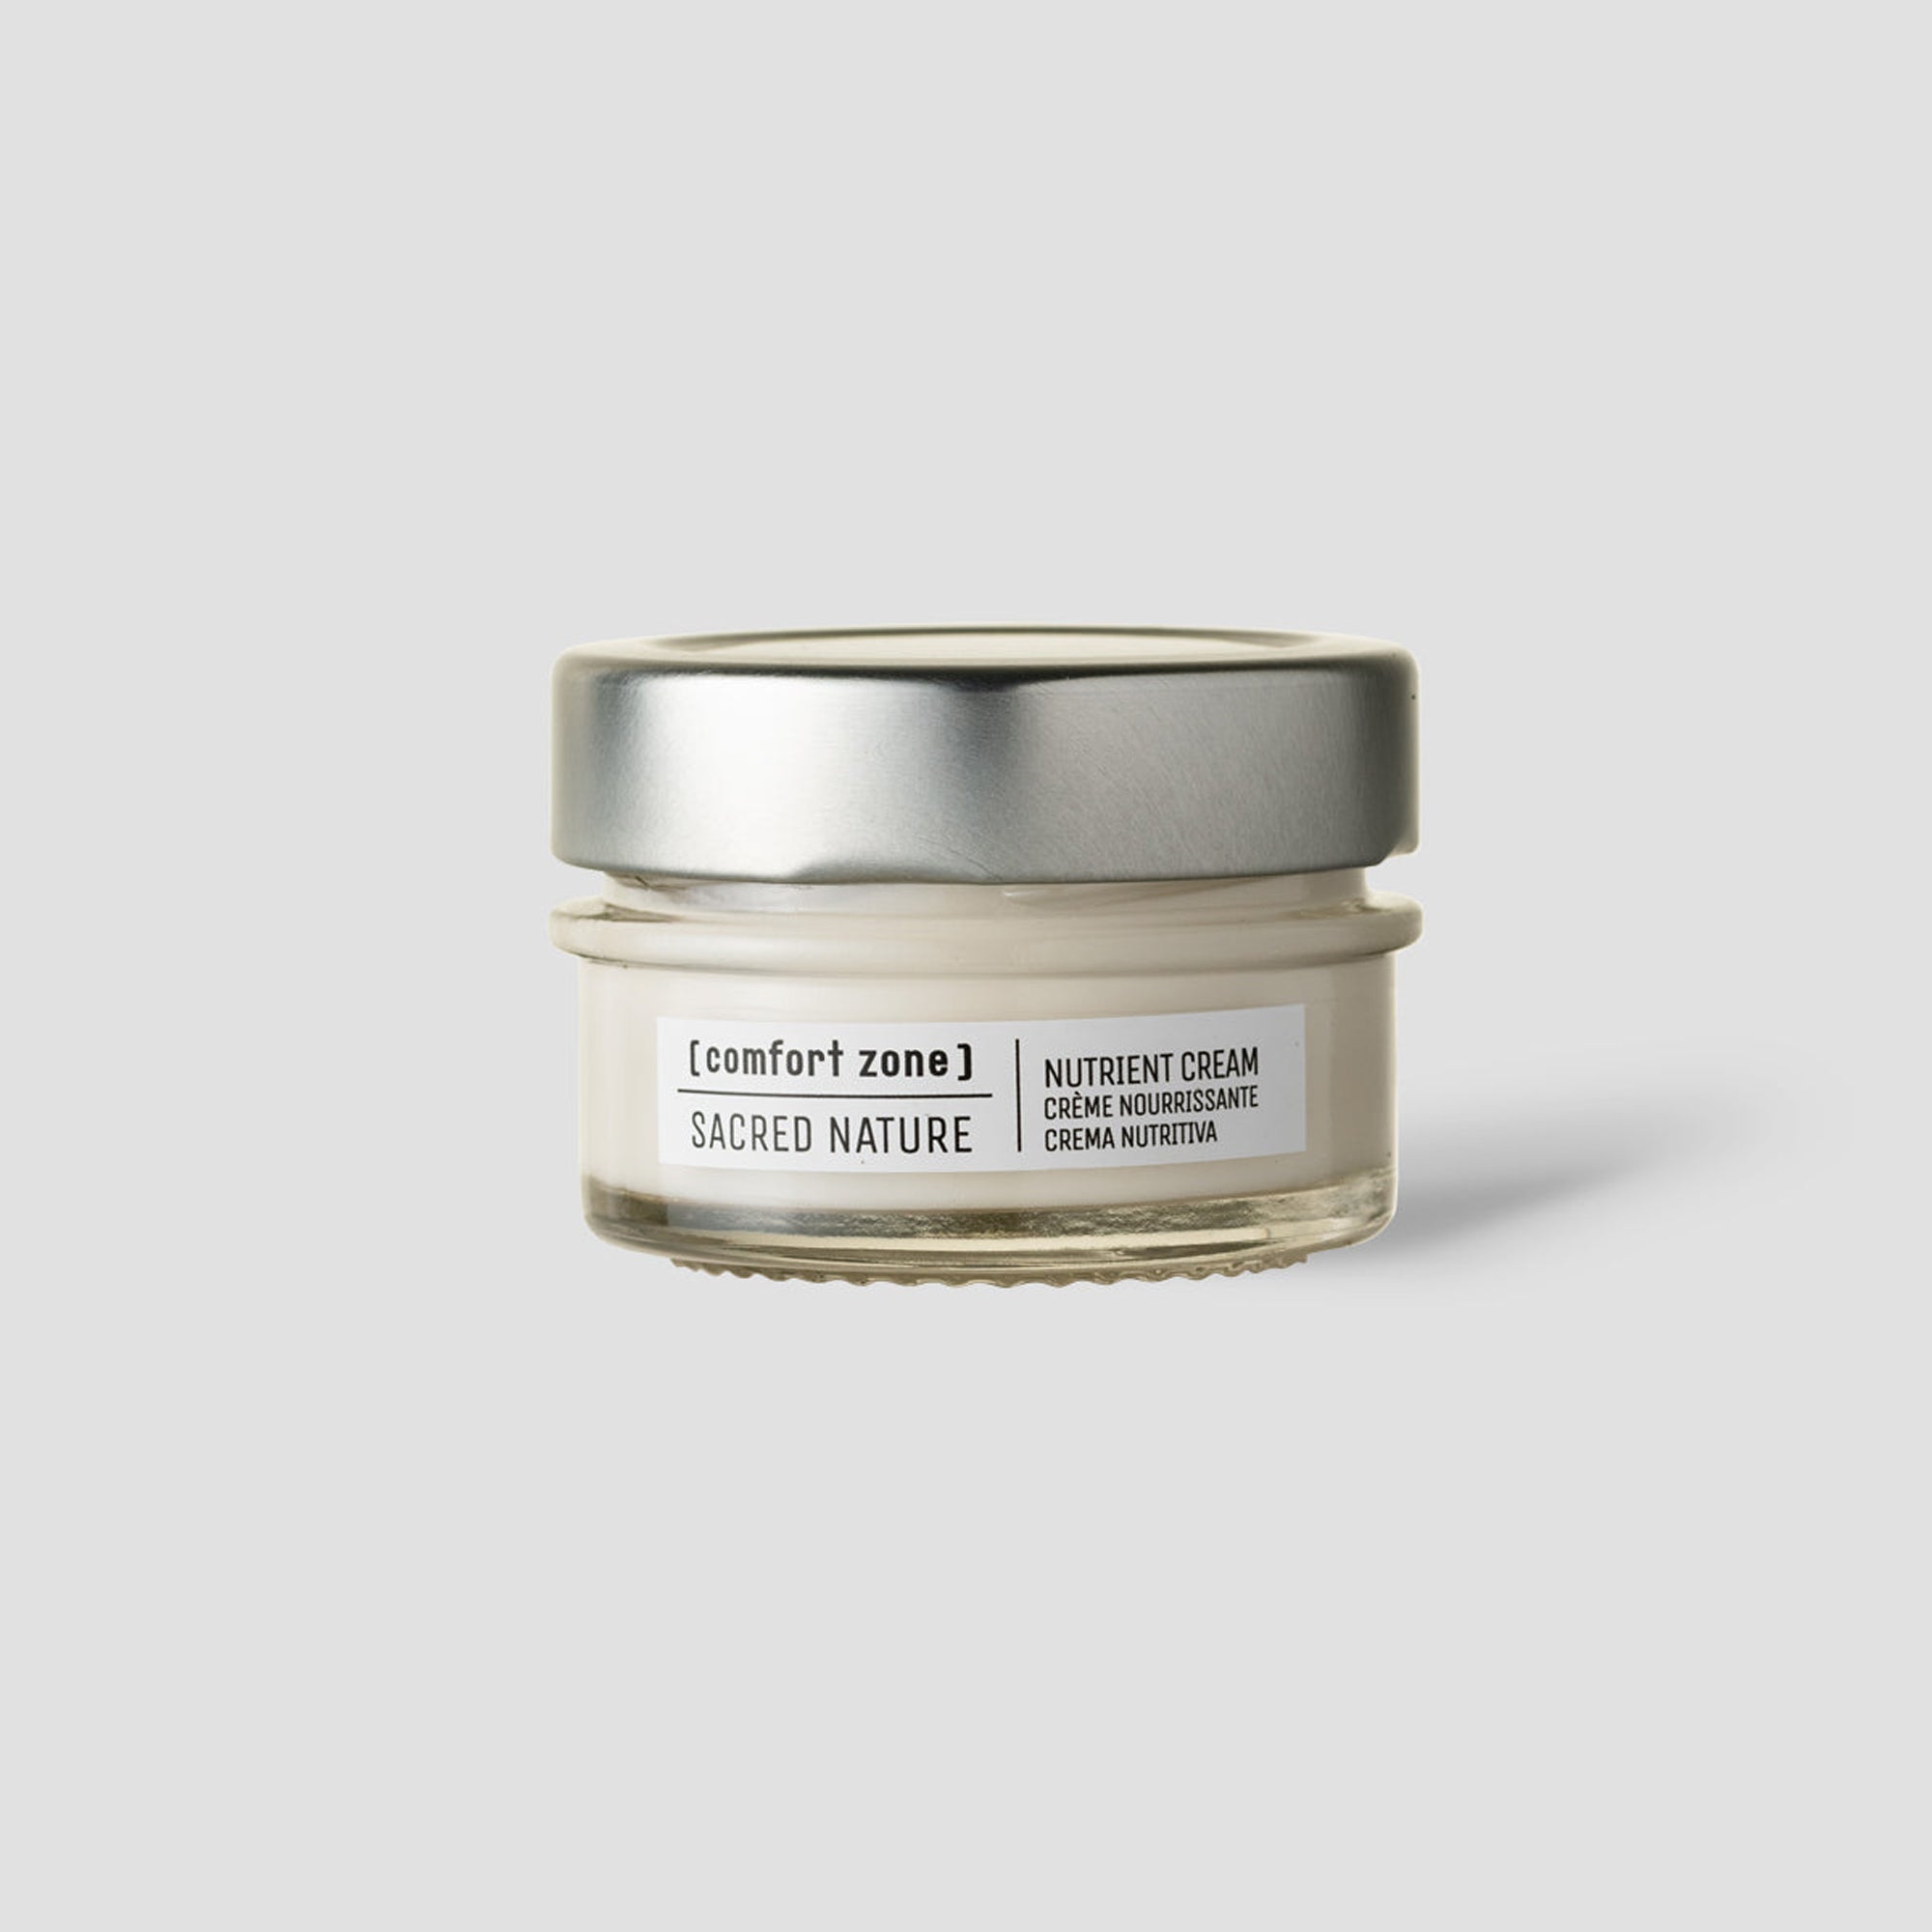 Sacred Nature Nutrient Cream (Antioxidant Face Cream) - 50ml - [ comfort zone ]